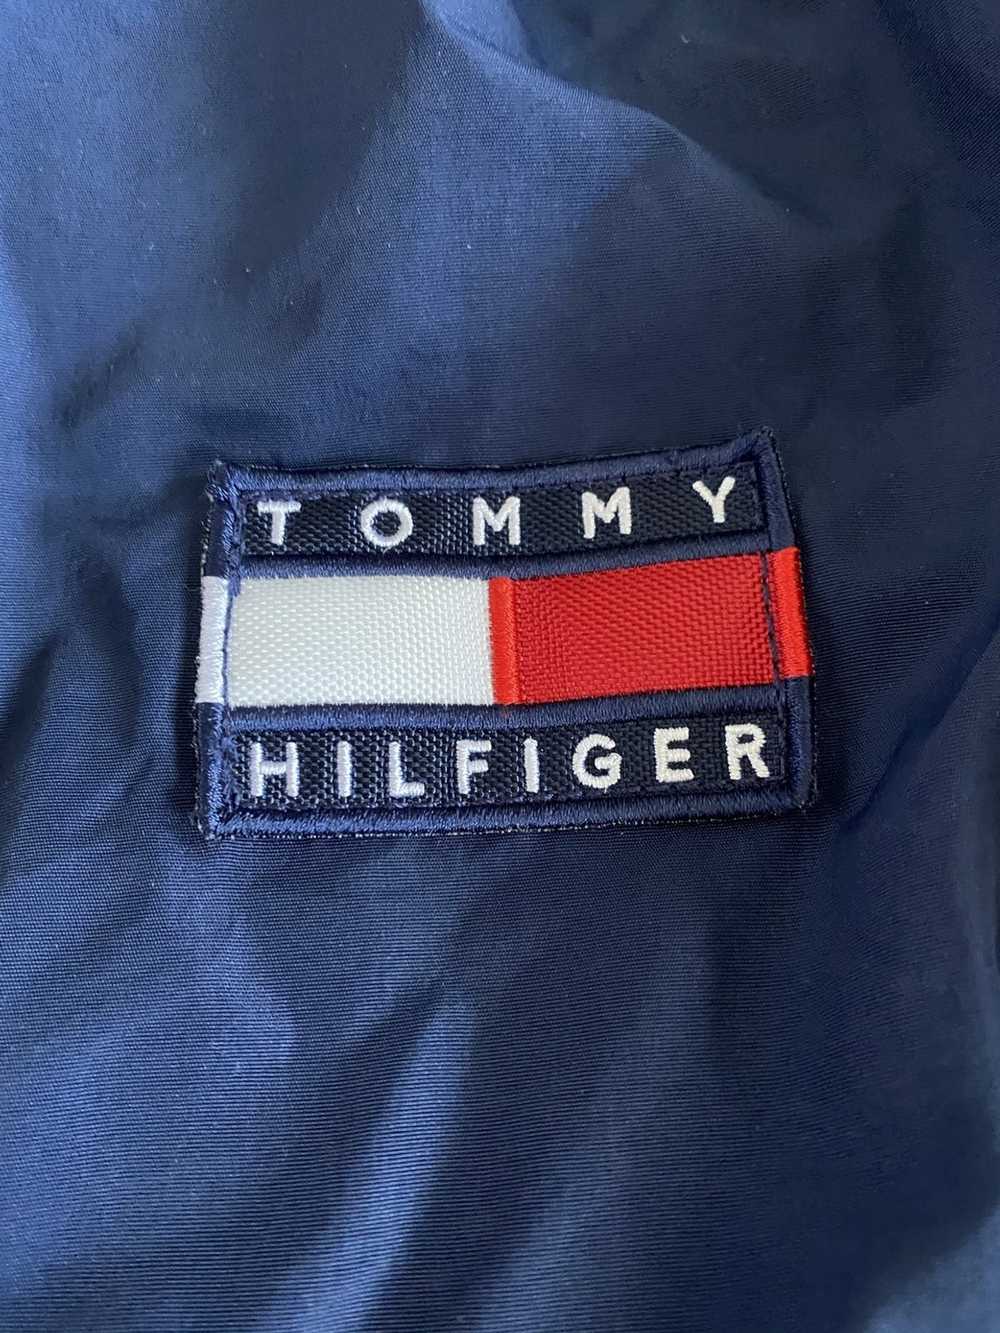 Tommy Hilfiger Tommy Hilfiger logo Jacket - image 3